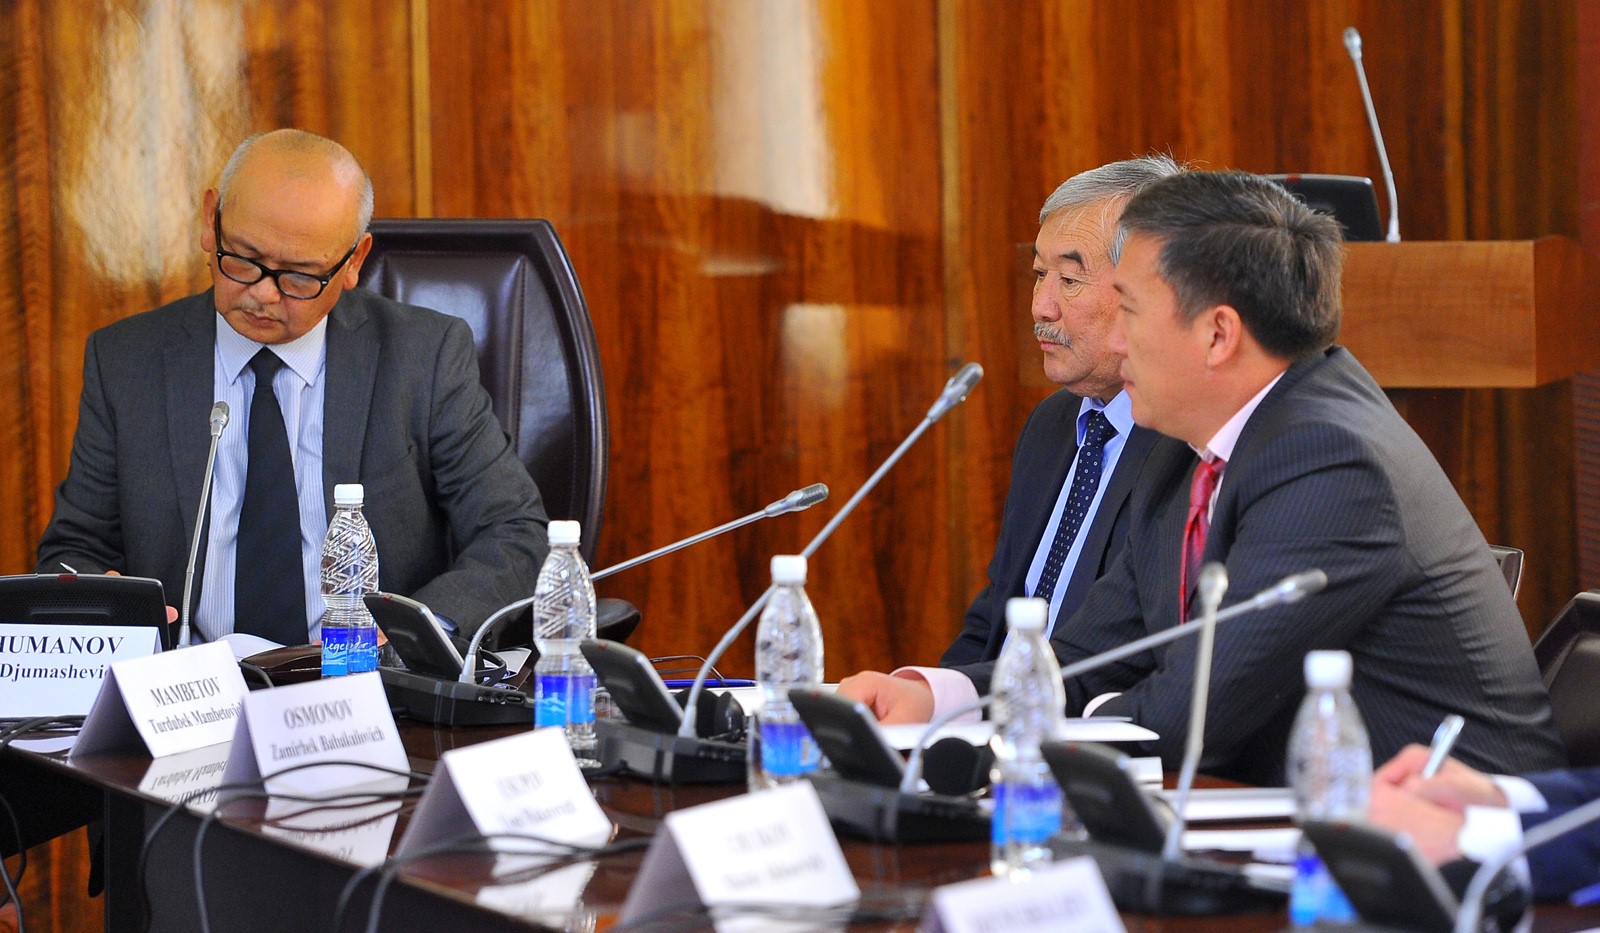 Талайбек Койчуманов: Кыргызстан усилит работу по защите прав инвесторов